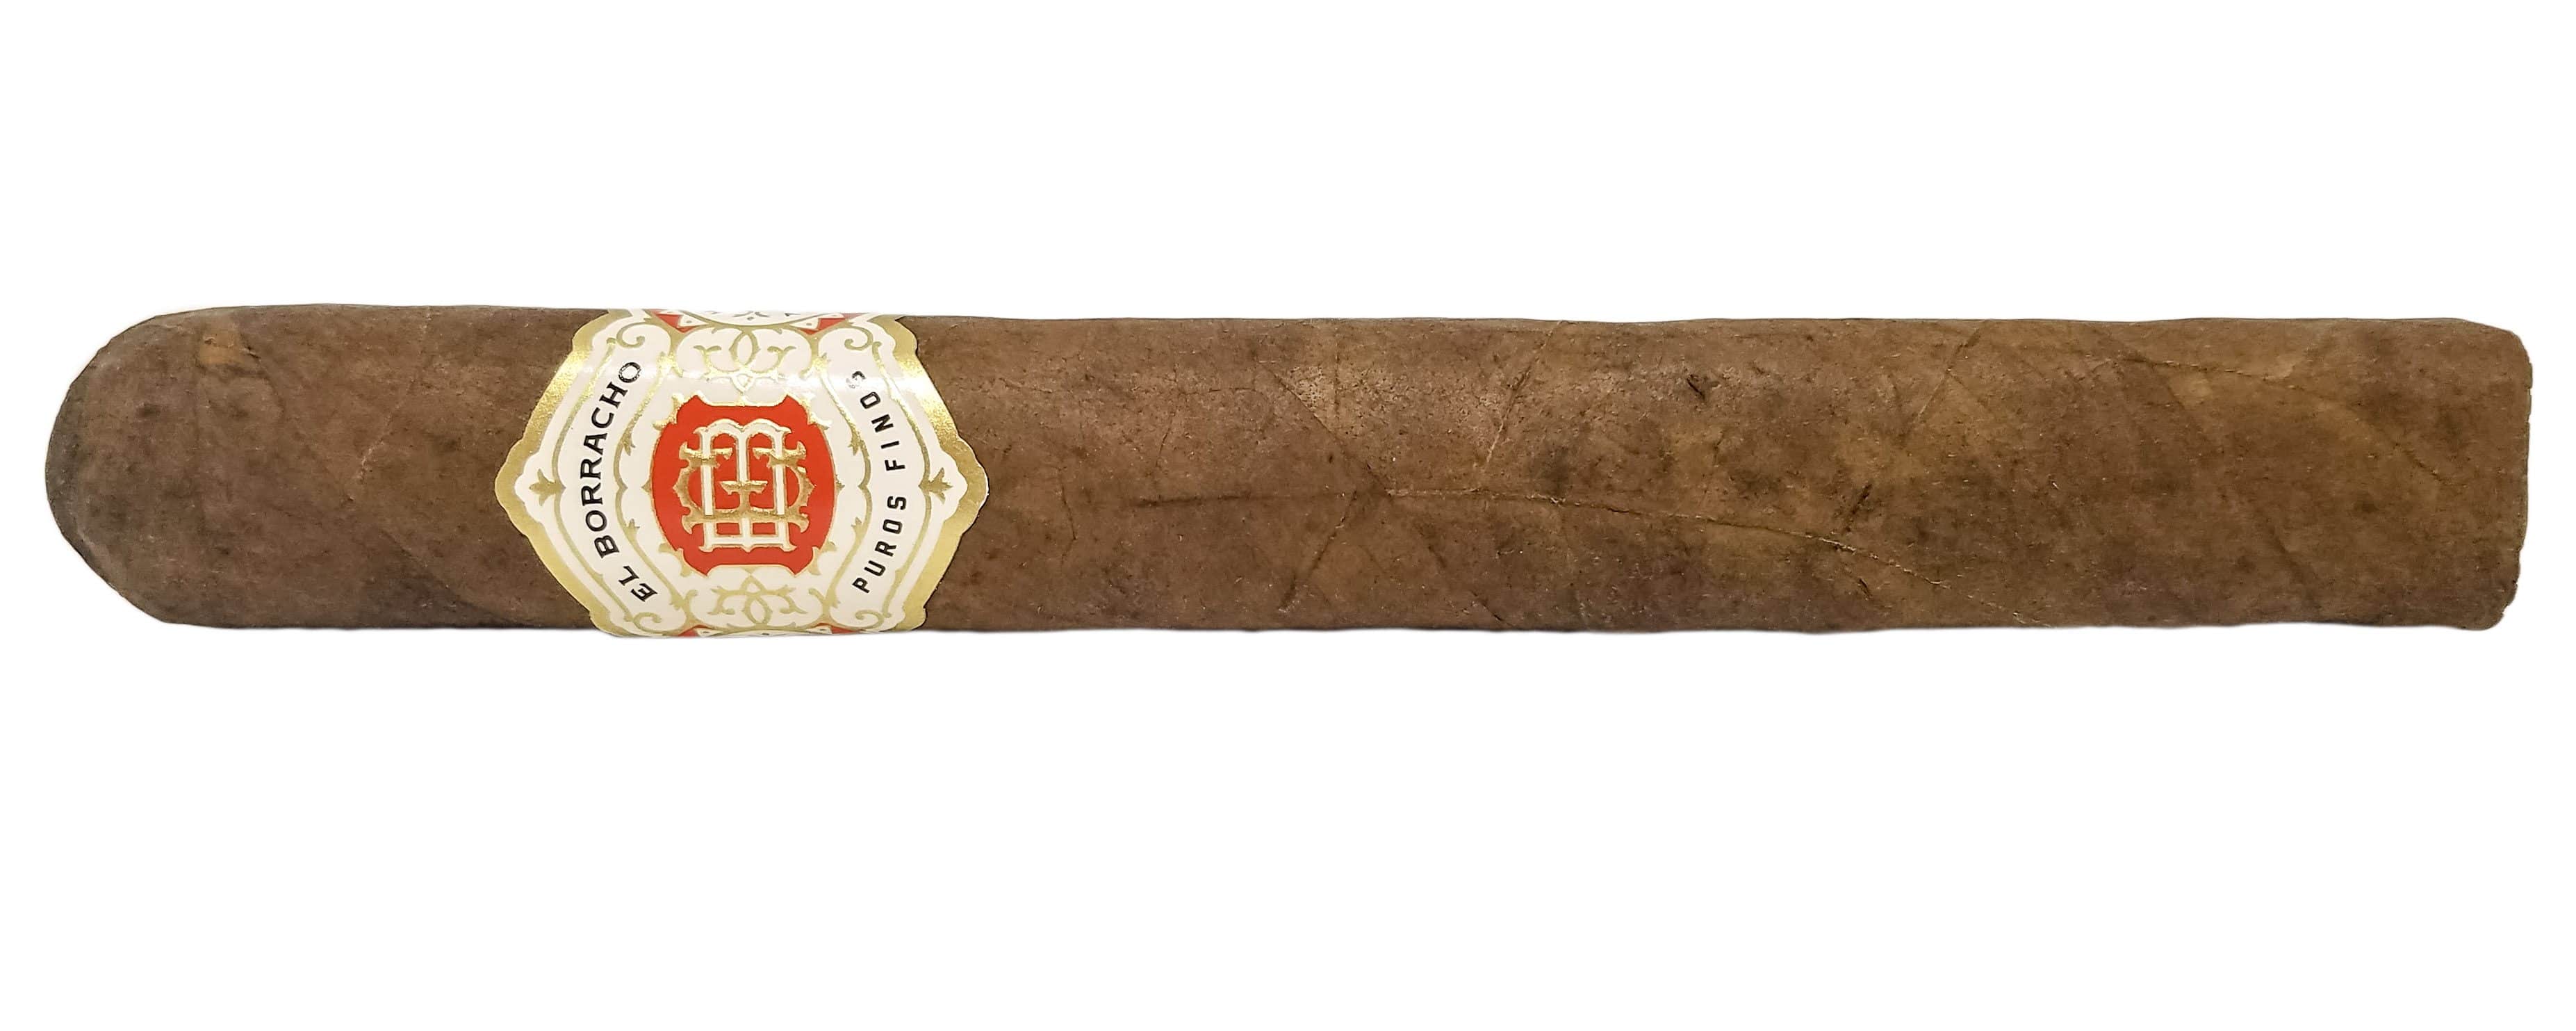 Blind Cigar Review: Dapper | El Borracho Toro